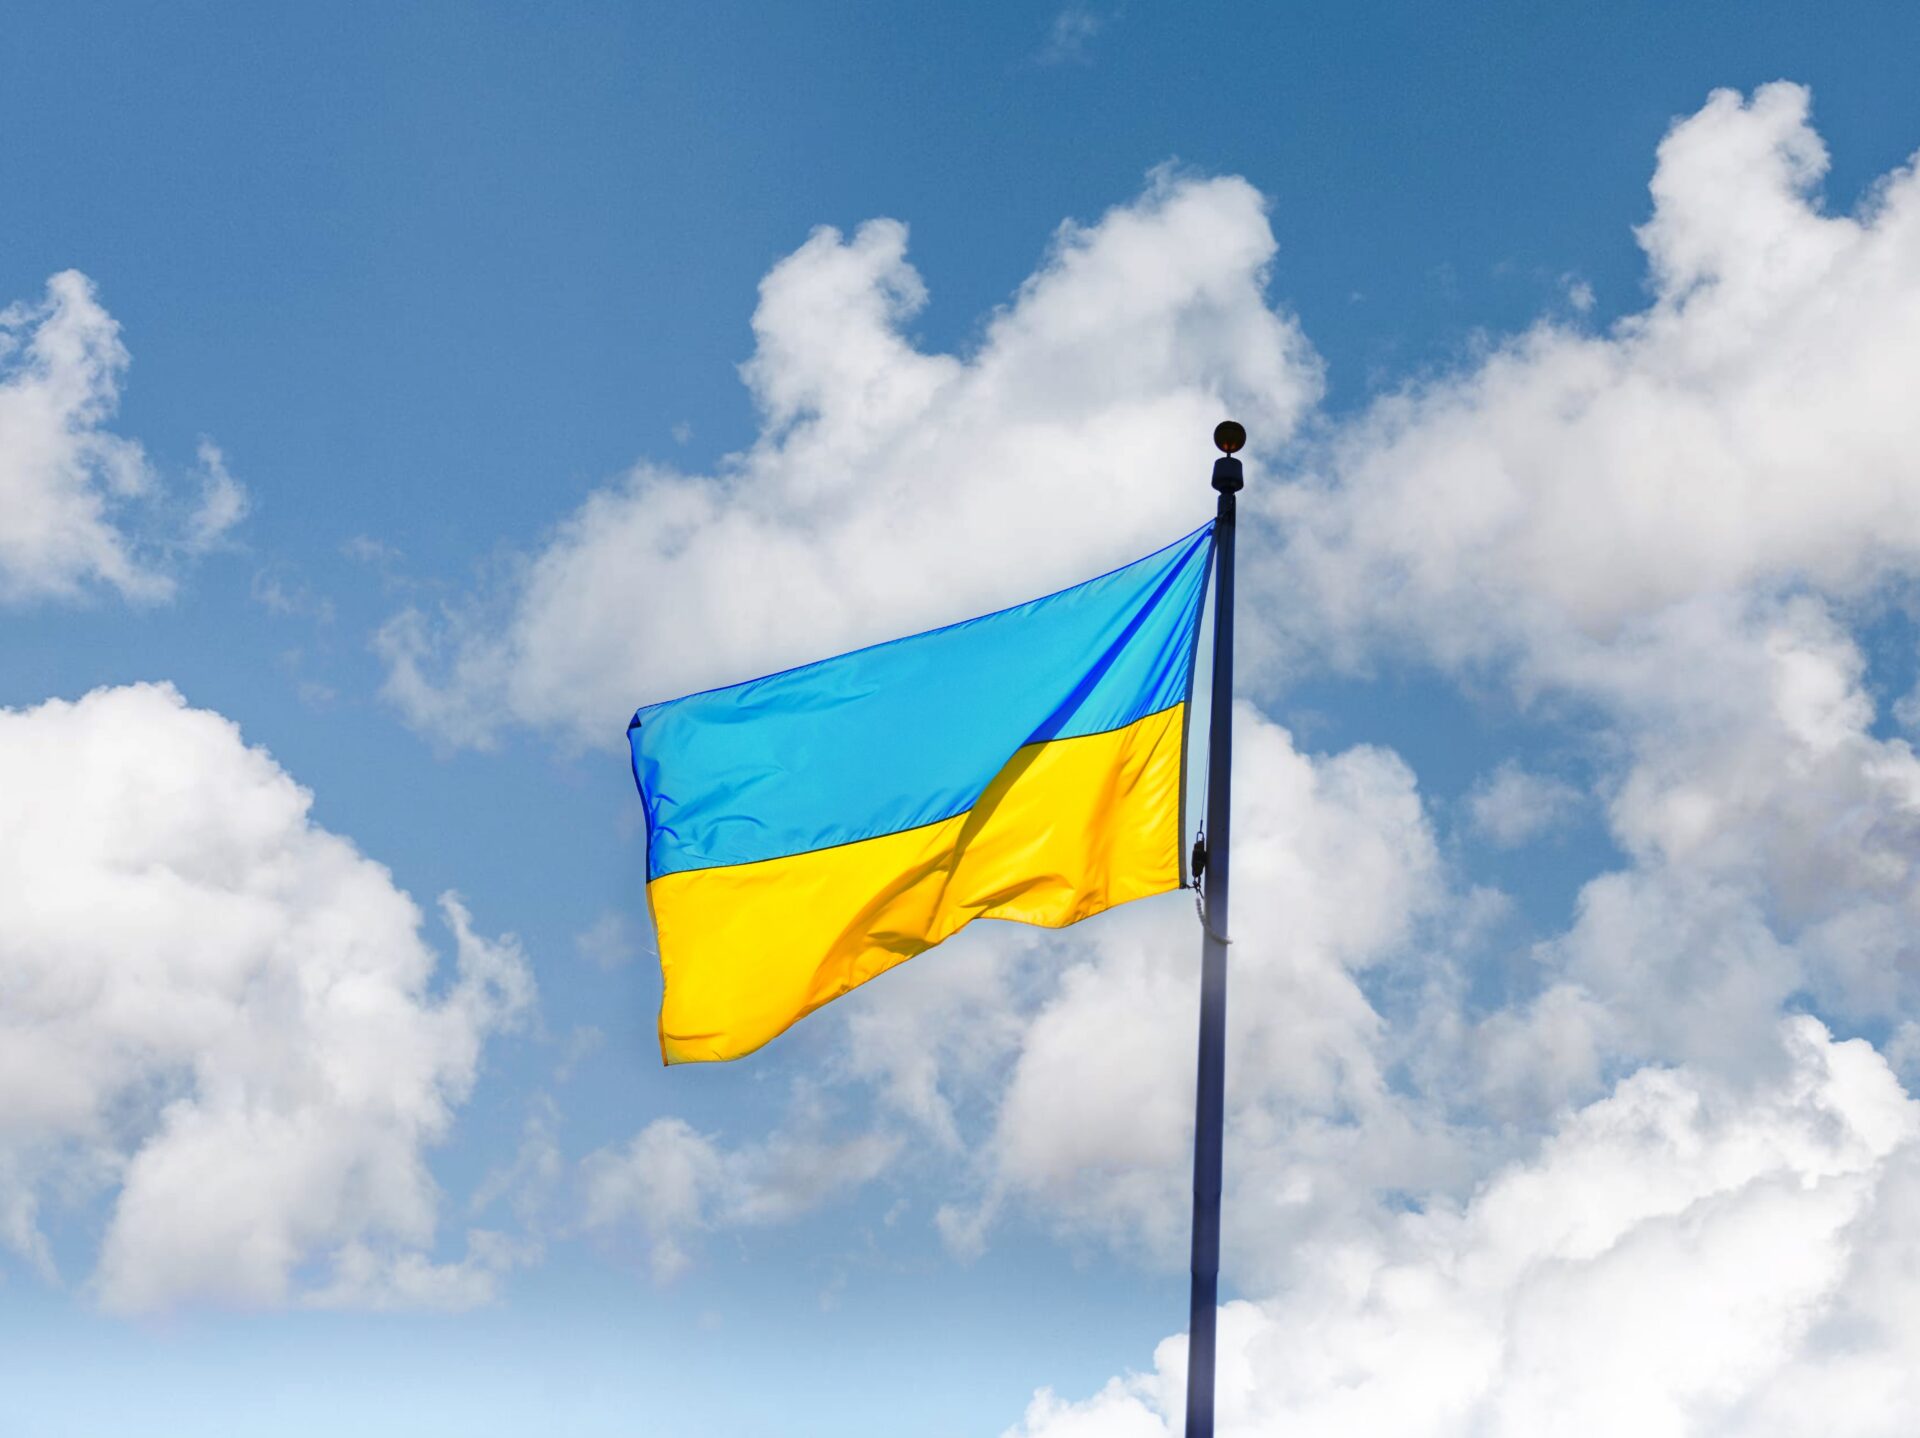 У Вроцлаві відбудуться святкові заходи з нагоди Дня Незалежності України!